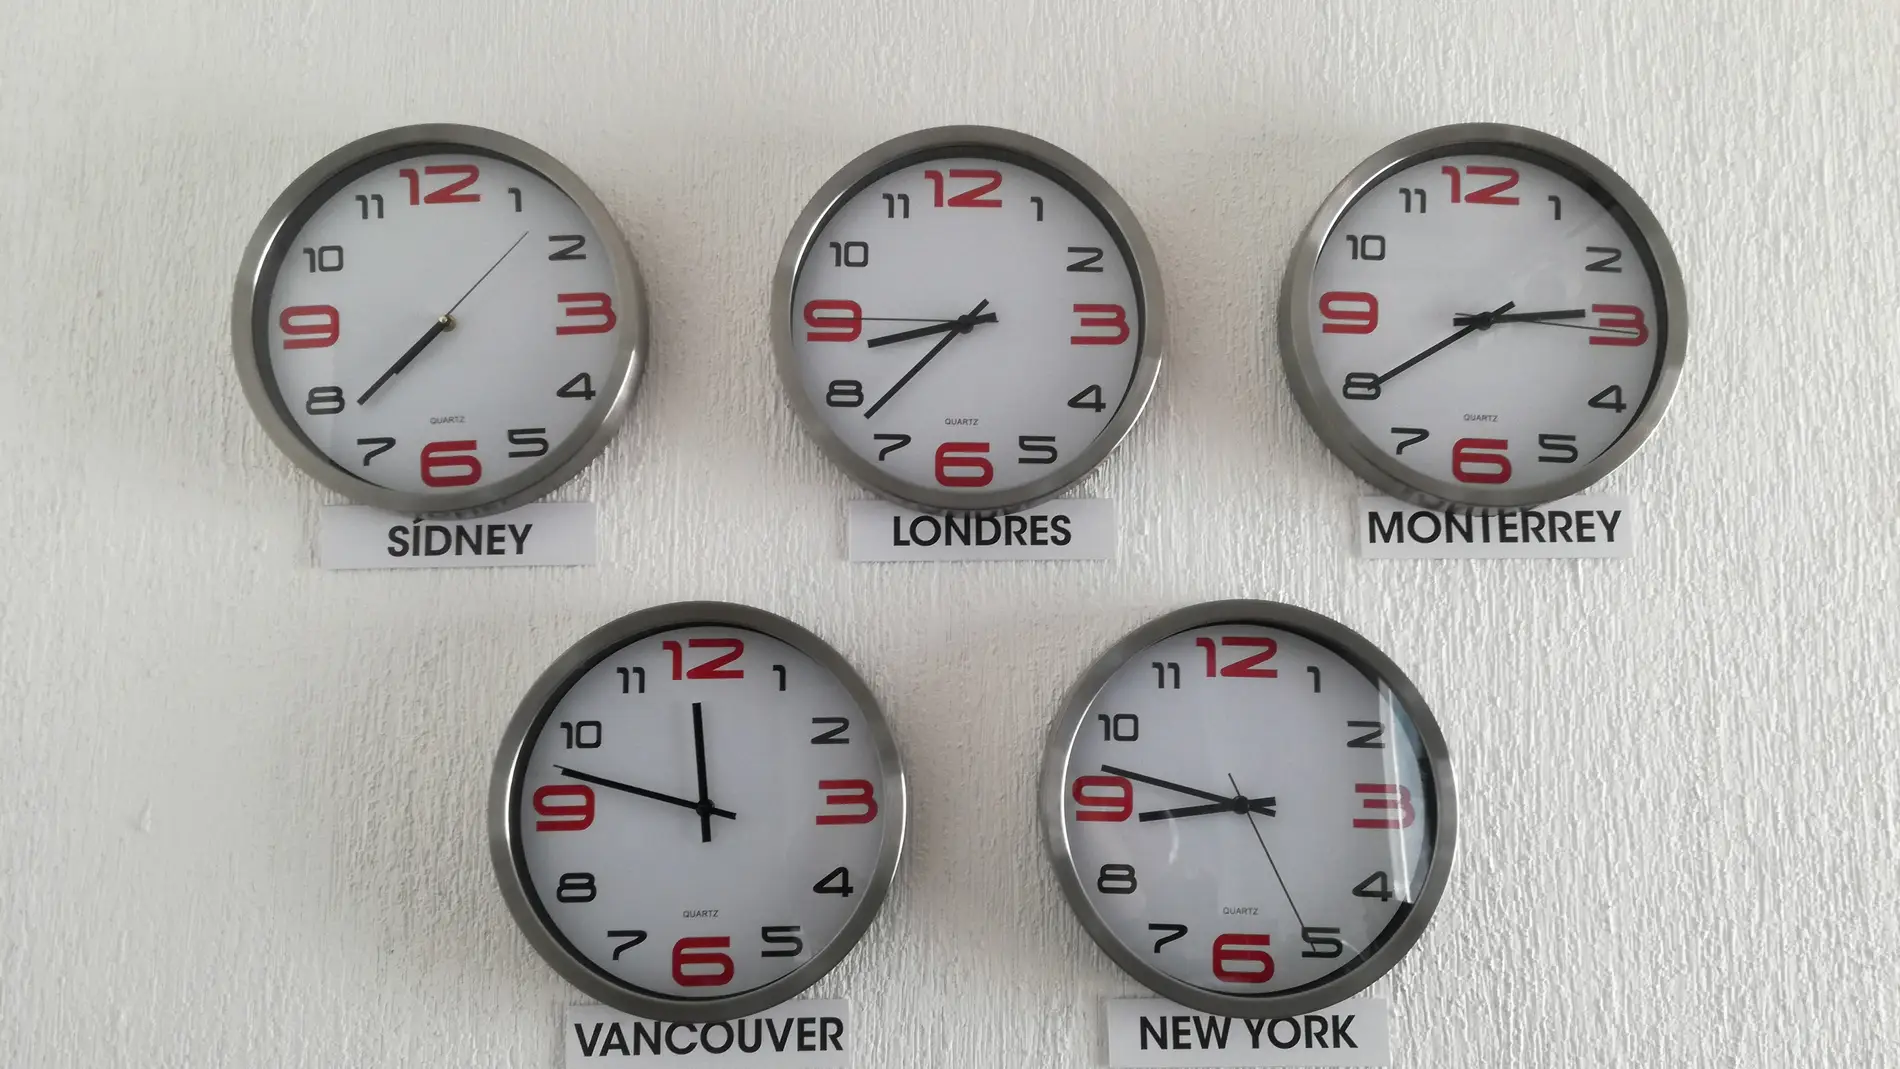 Relojes con distintos husos horarios